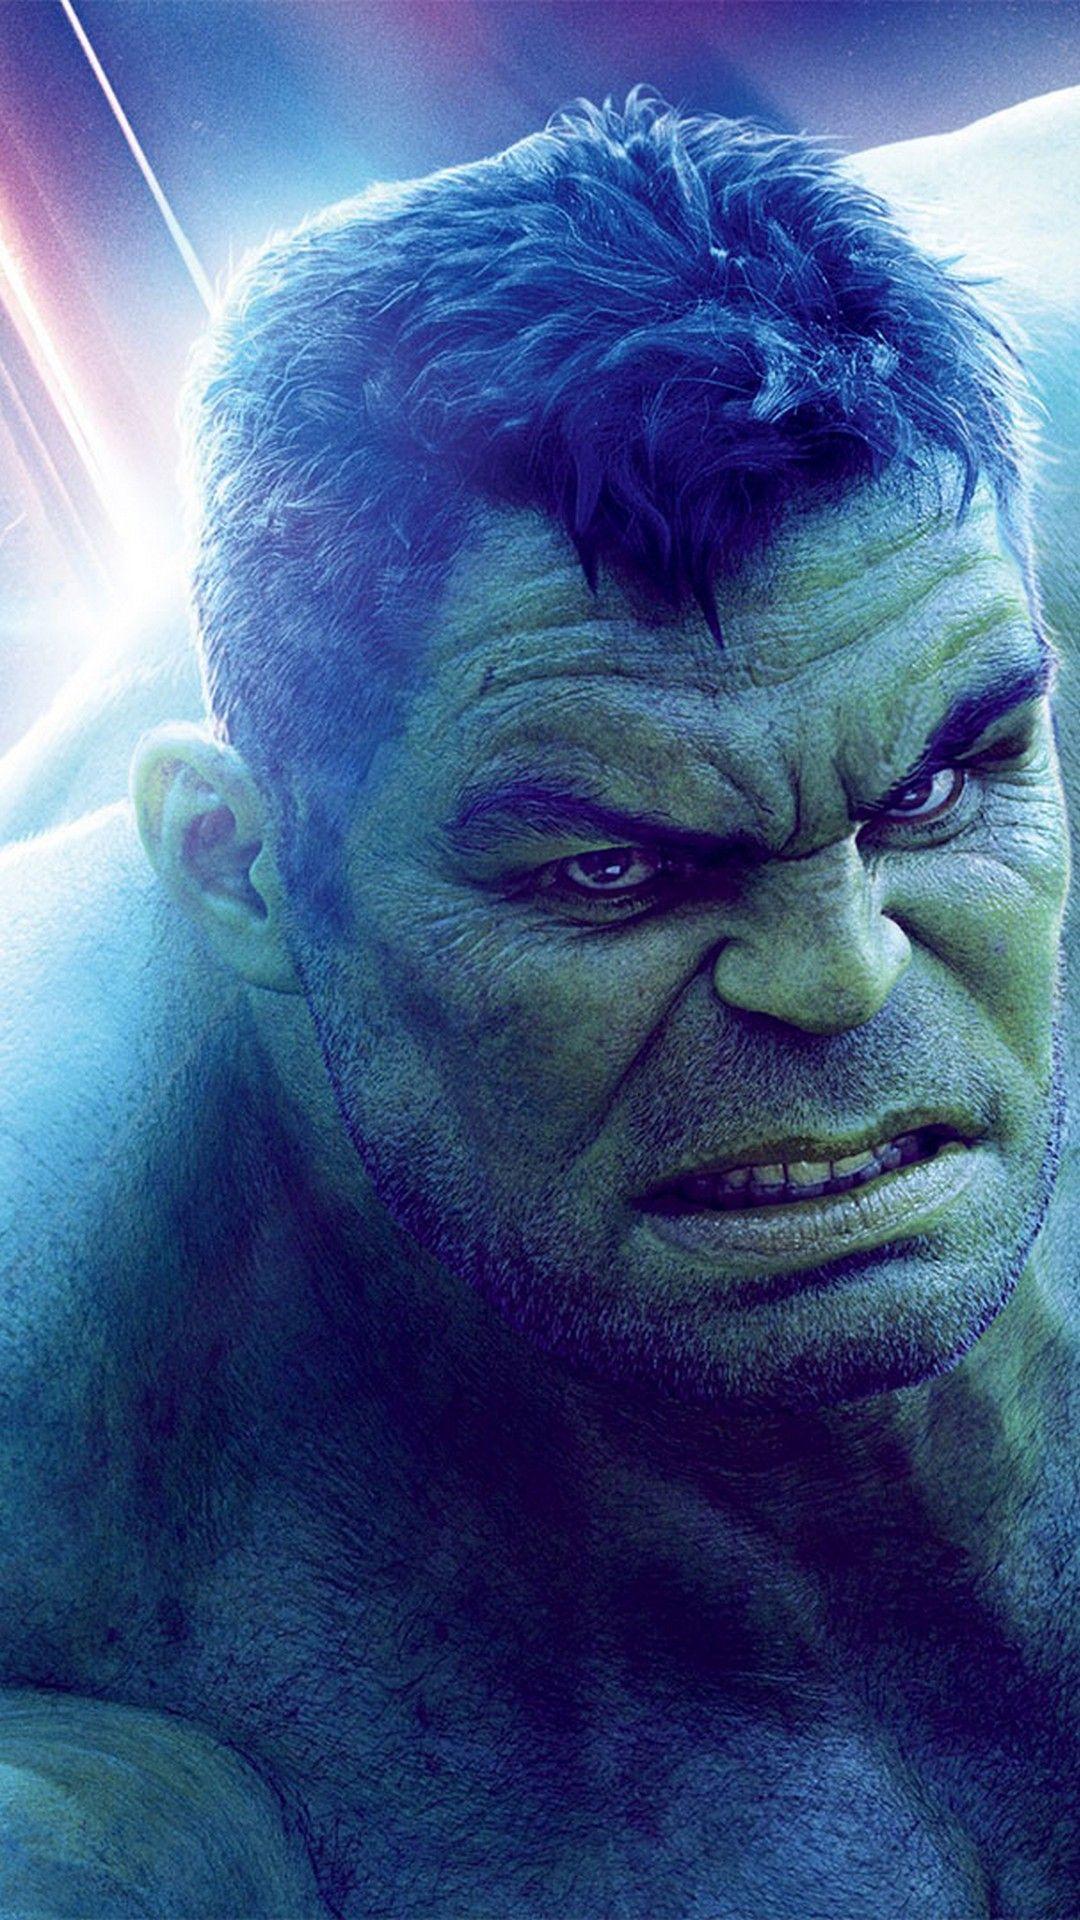 Hulk Avengers Endgame iPhone Wallpaper. Hulk avengers, Best movie